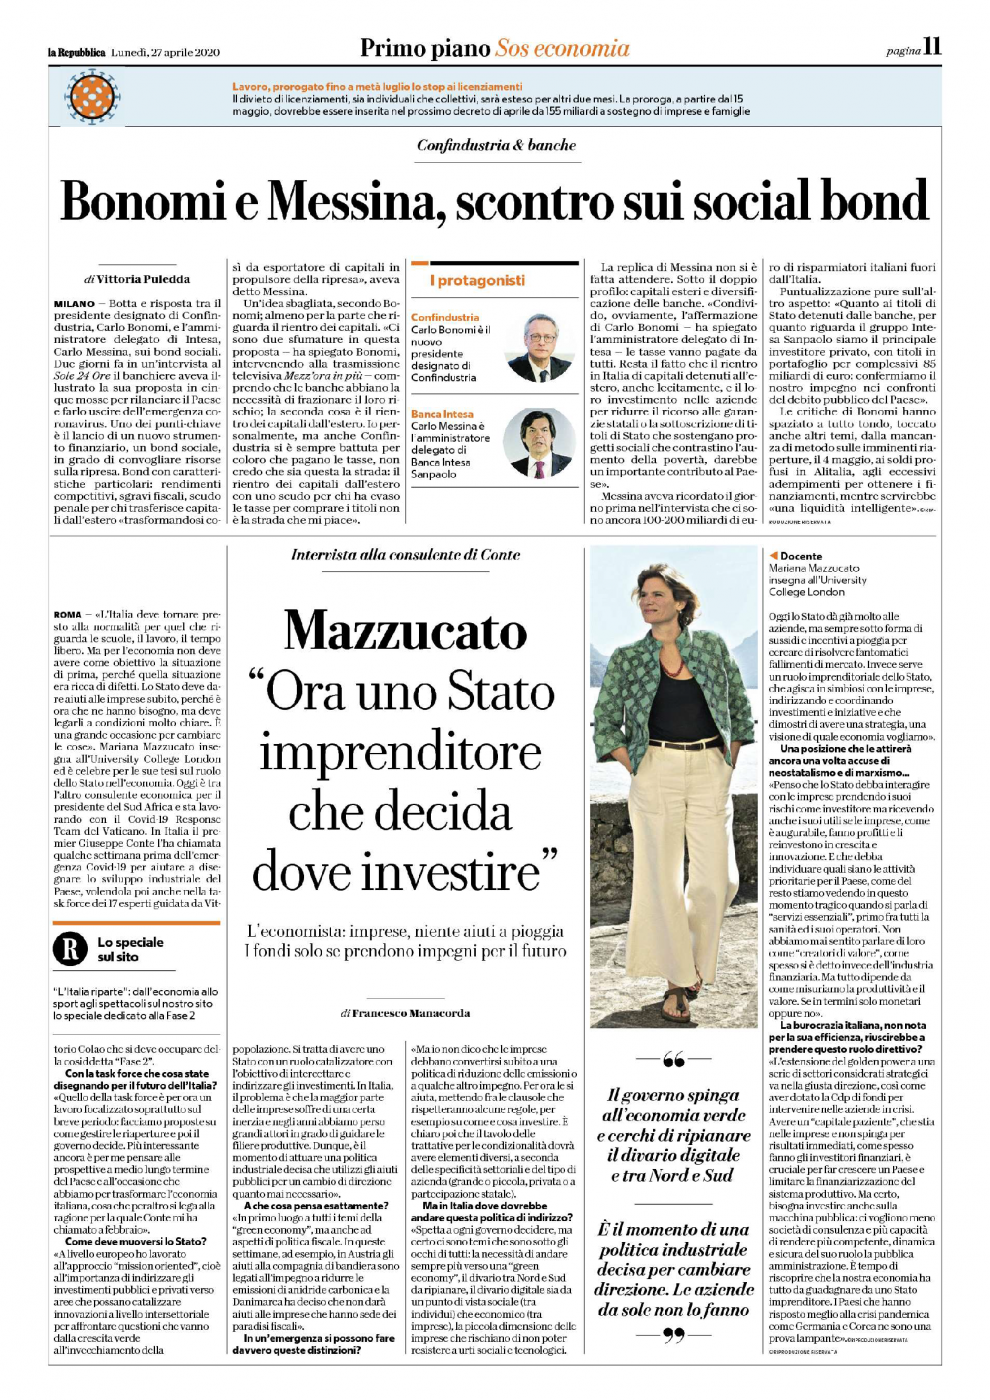 La Repubblica_interview_spread